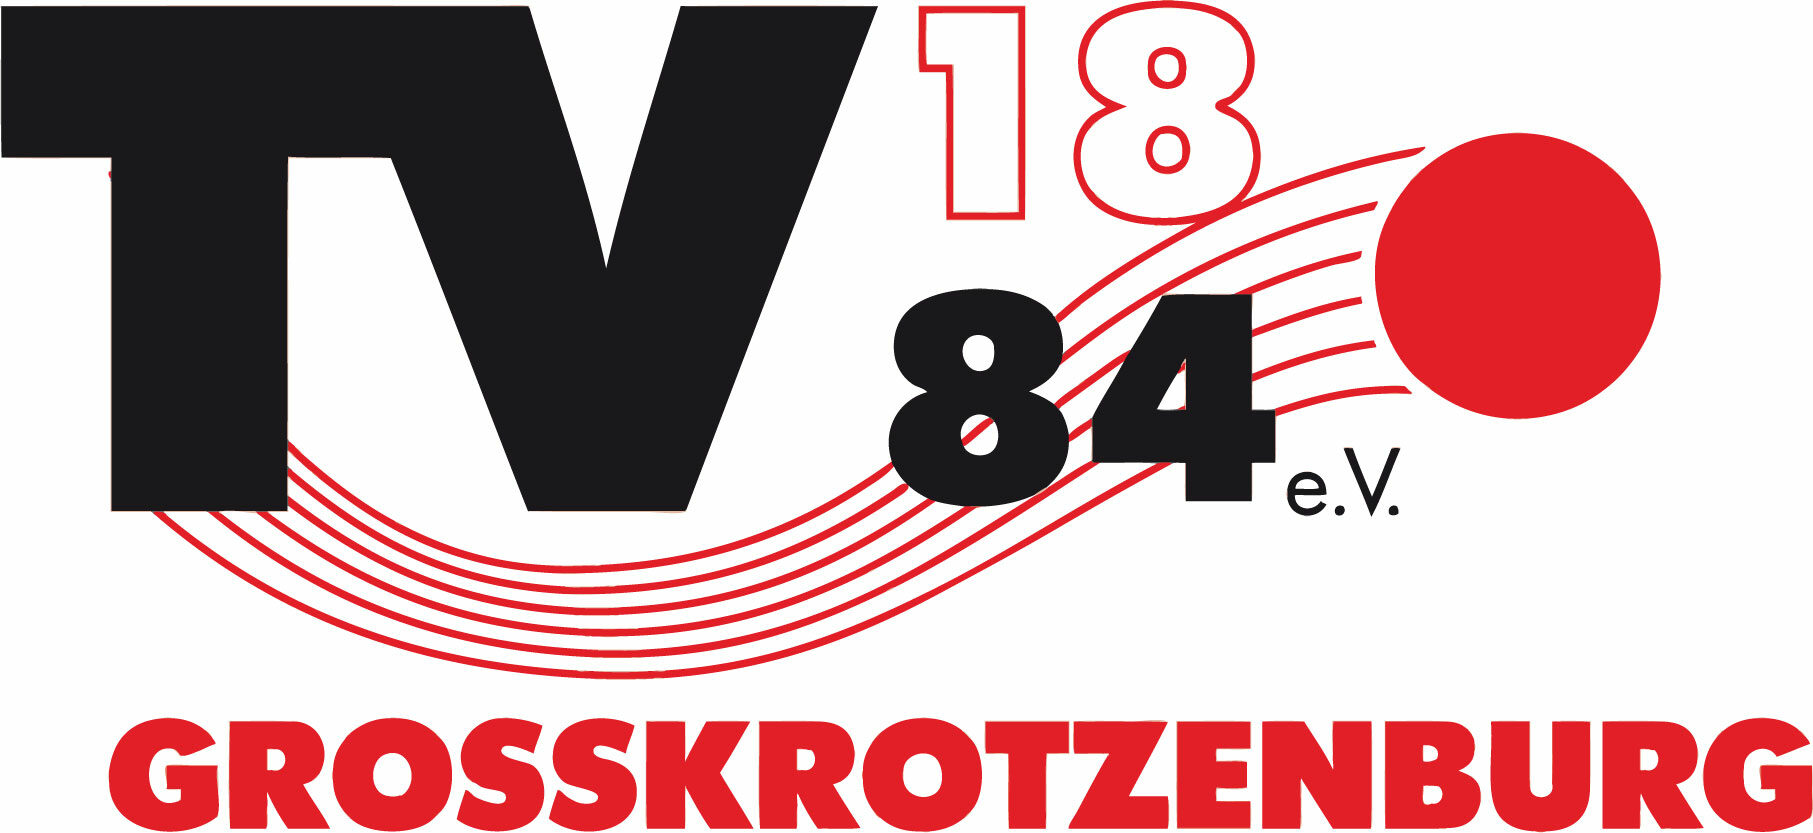 Logo TVG 1884